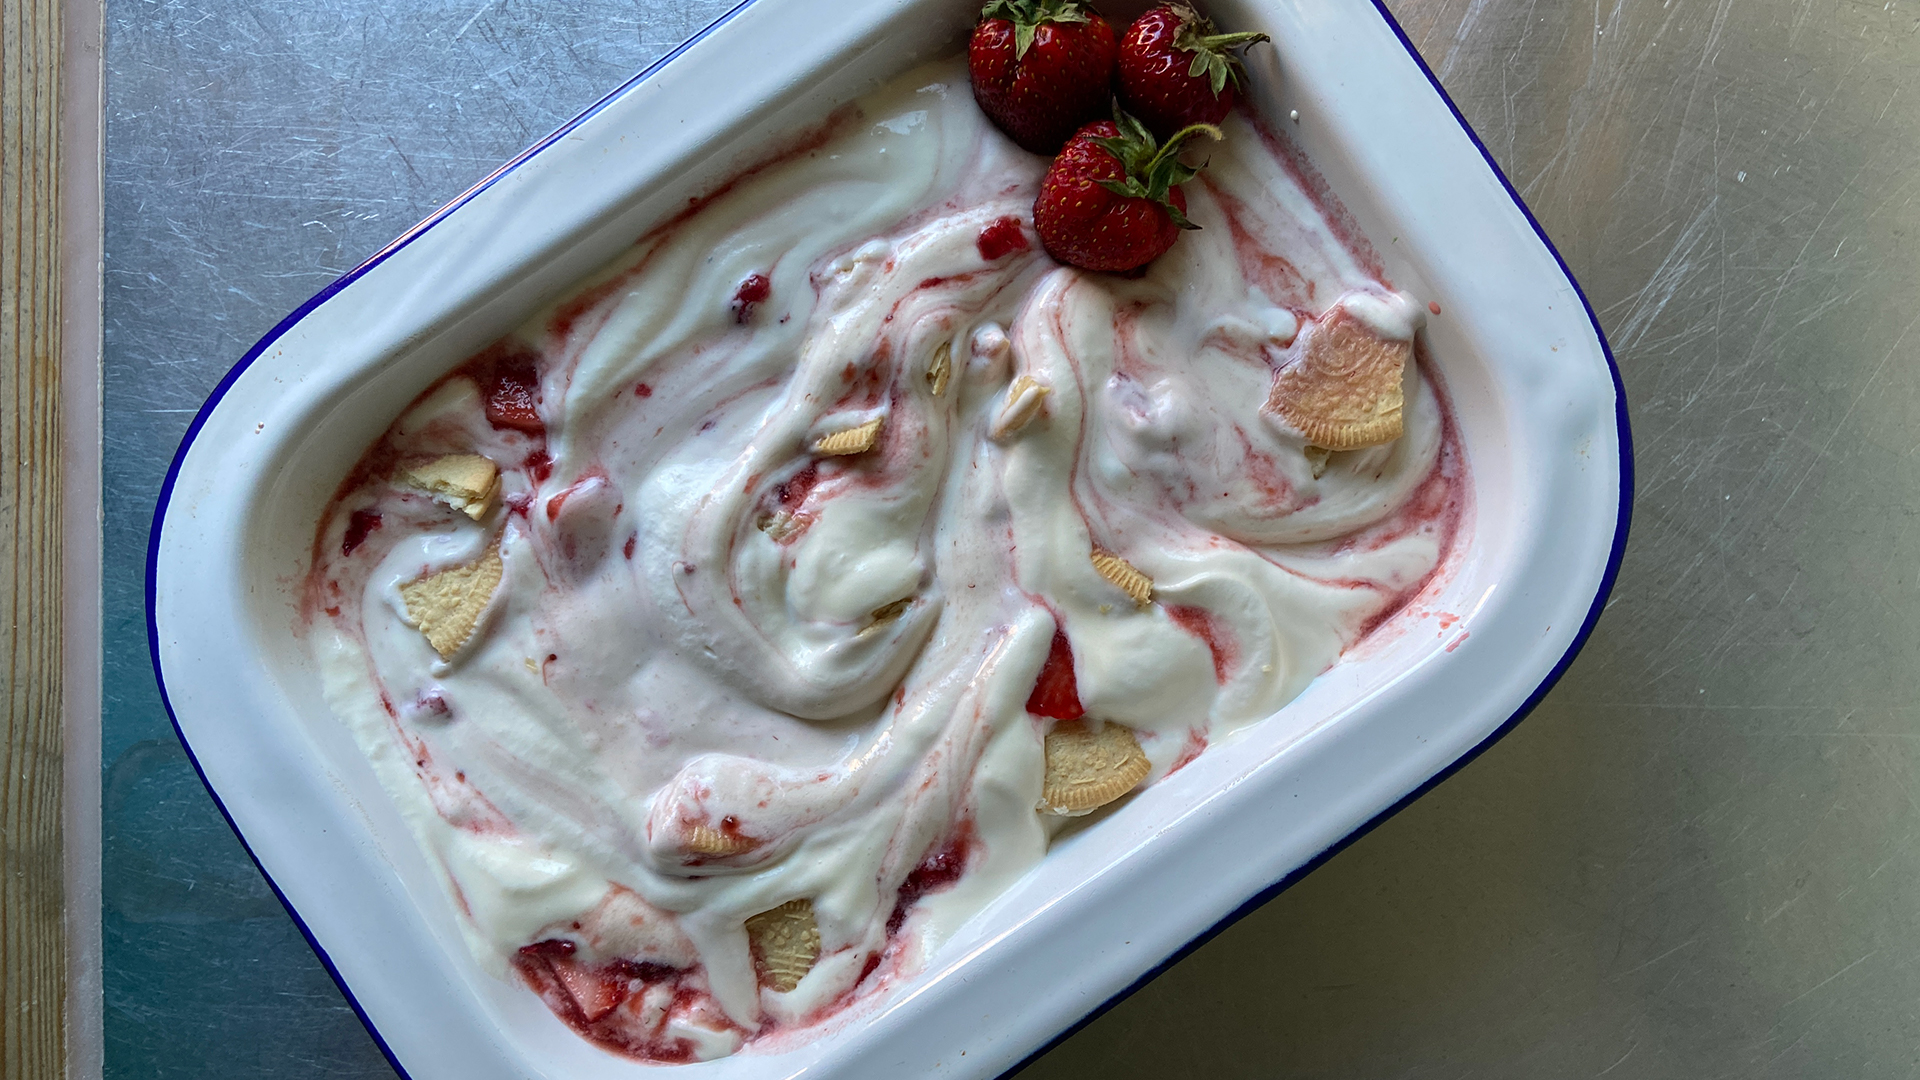 No-churn strawberry cheesecake ice cream